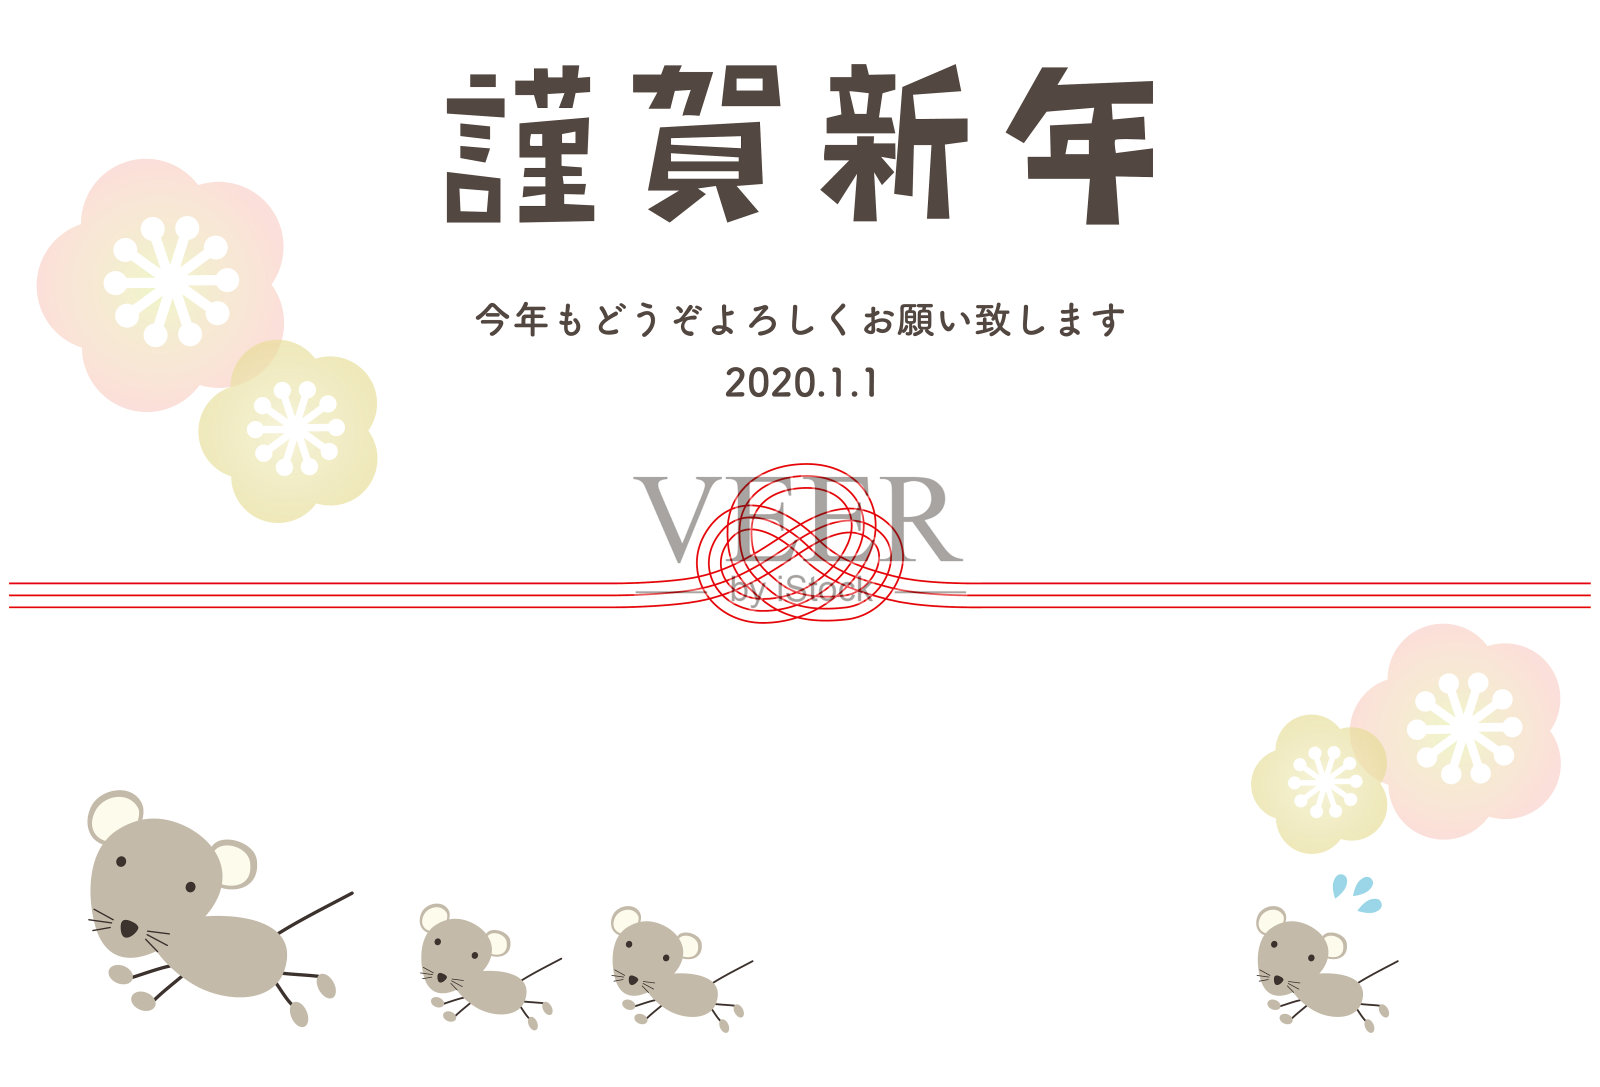 跑鼠和瑞穗的父母和孩子的新年卡片插图。日文是“新年快乐”。插画图片素材